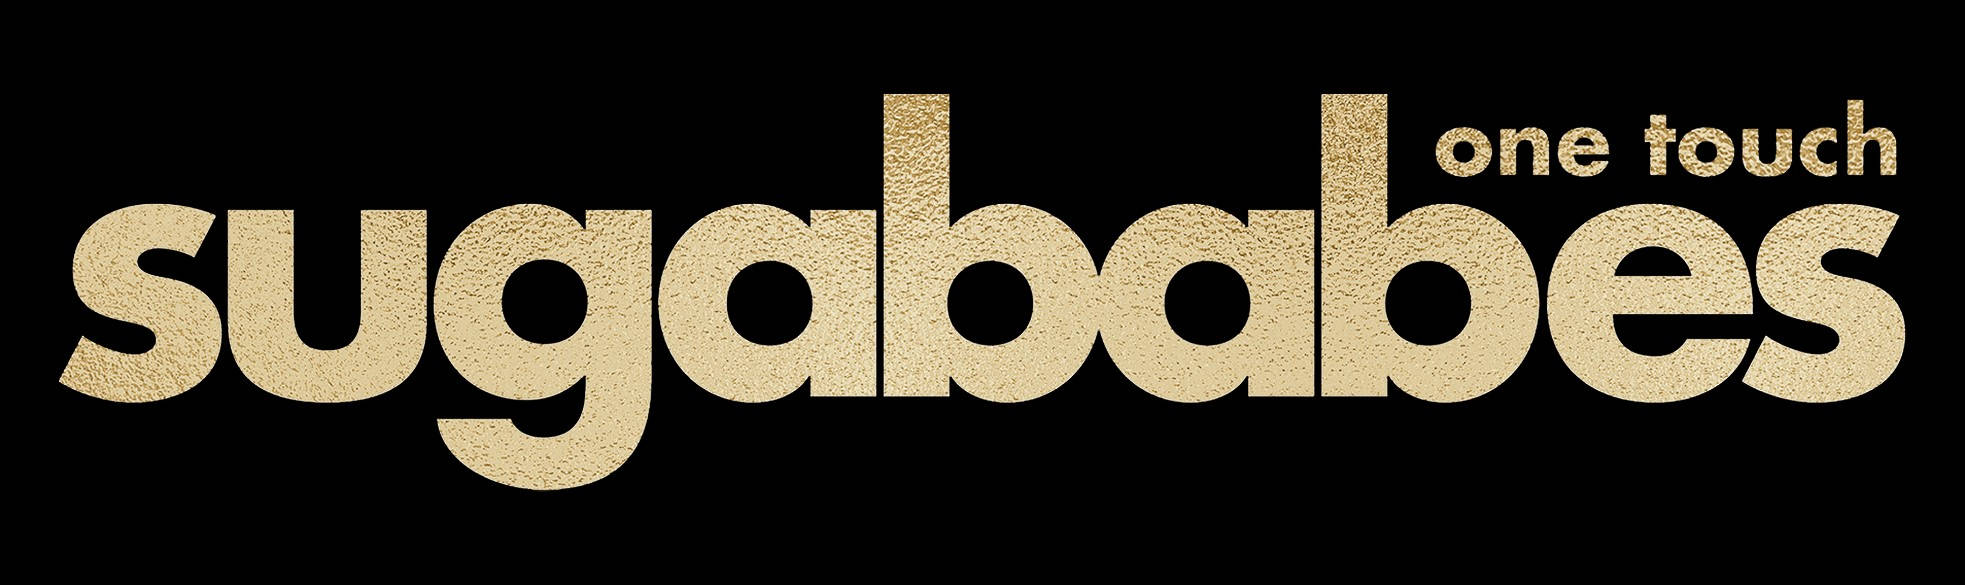 Sugababes Gold Logo Wallpaper